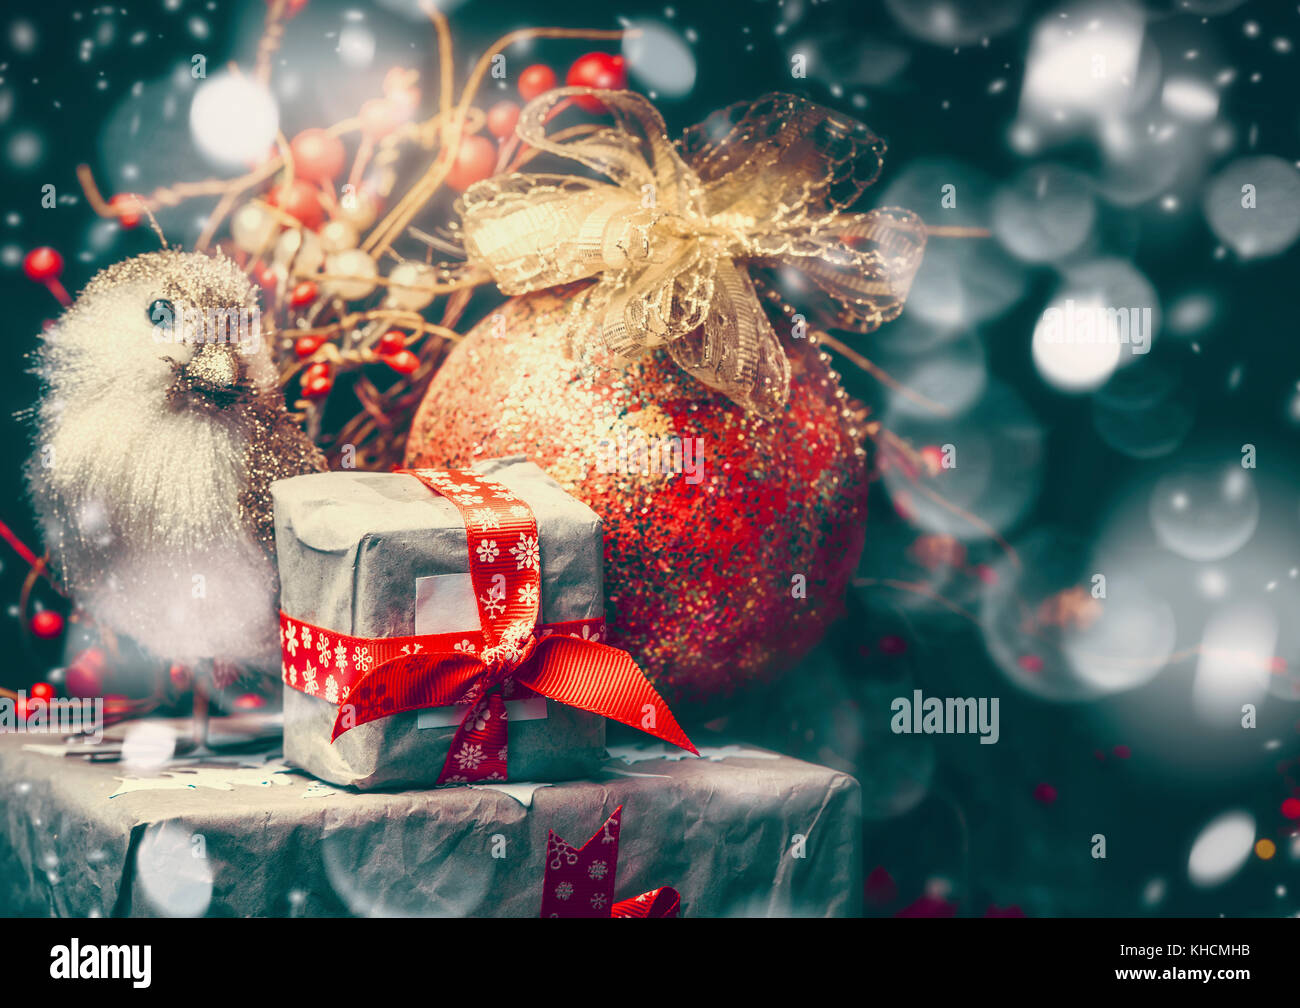 Regali Di Natale Bellissimi.Scheda Di Natale Con Bellissimi Regali Confezionati Vintage Palla Di Natale Con Nastro E Un Uccello Scuro Su Sfondo Di Neve In Stile Retro Foto Stock Alamy